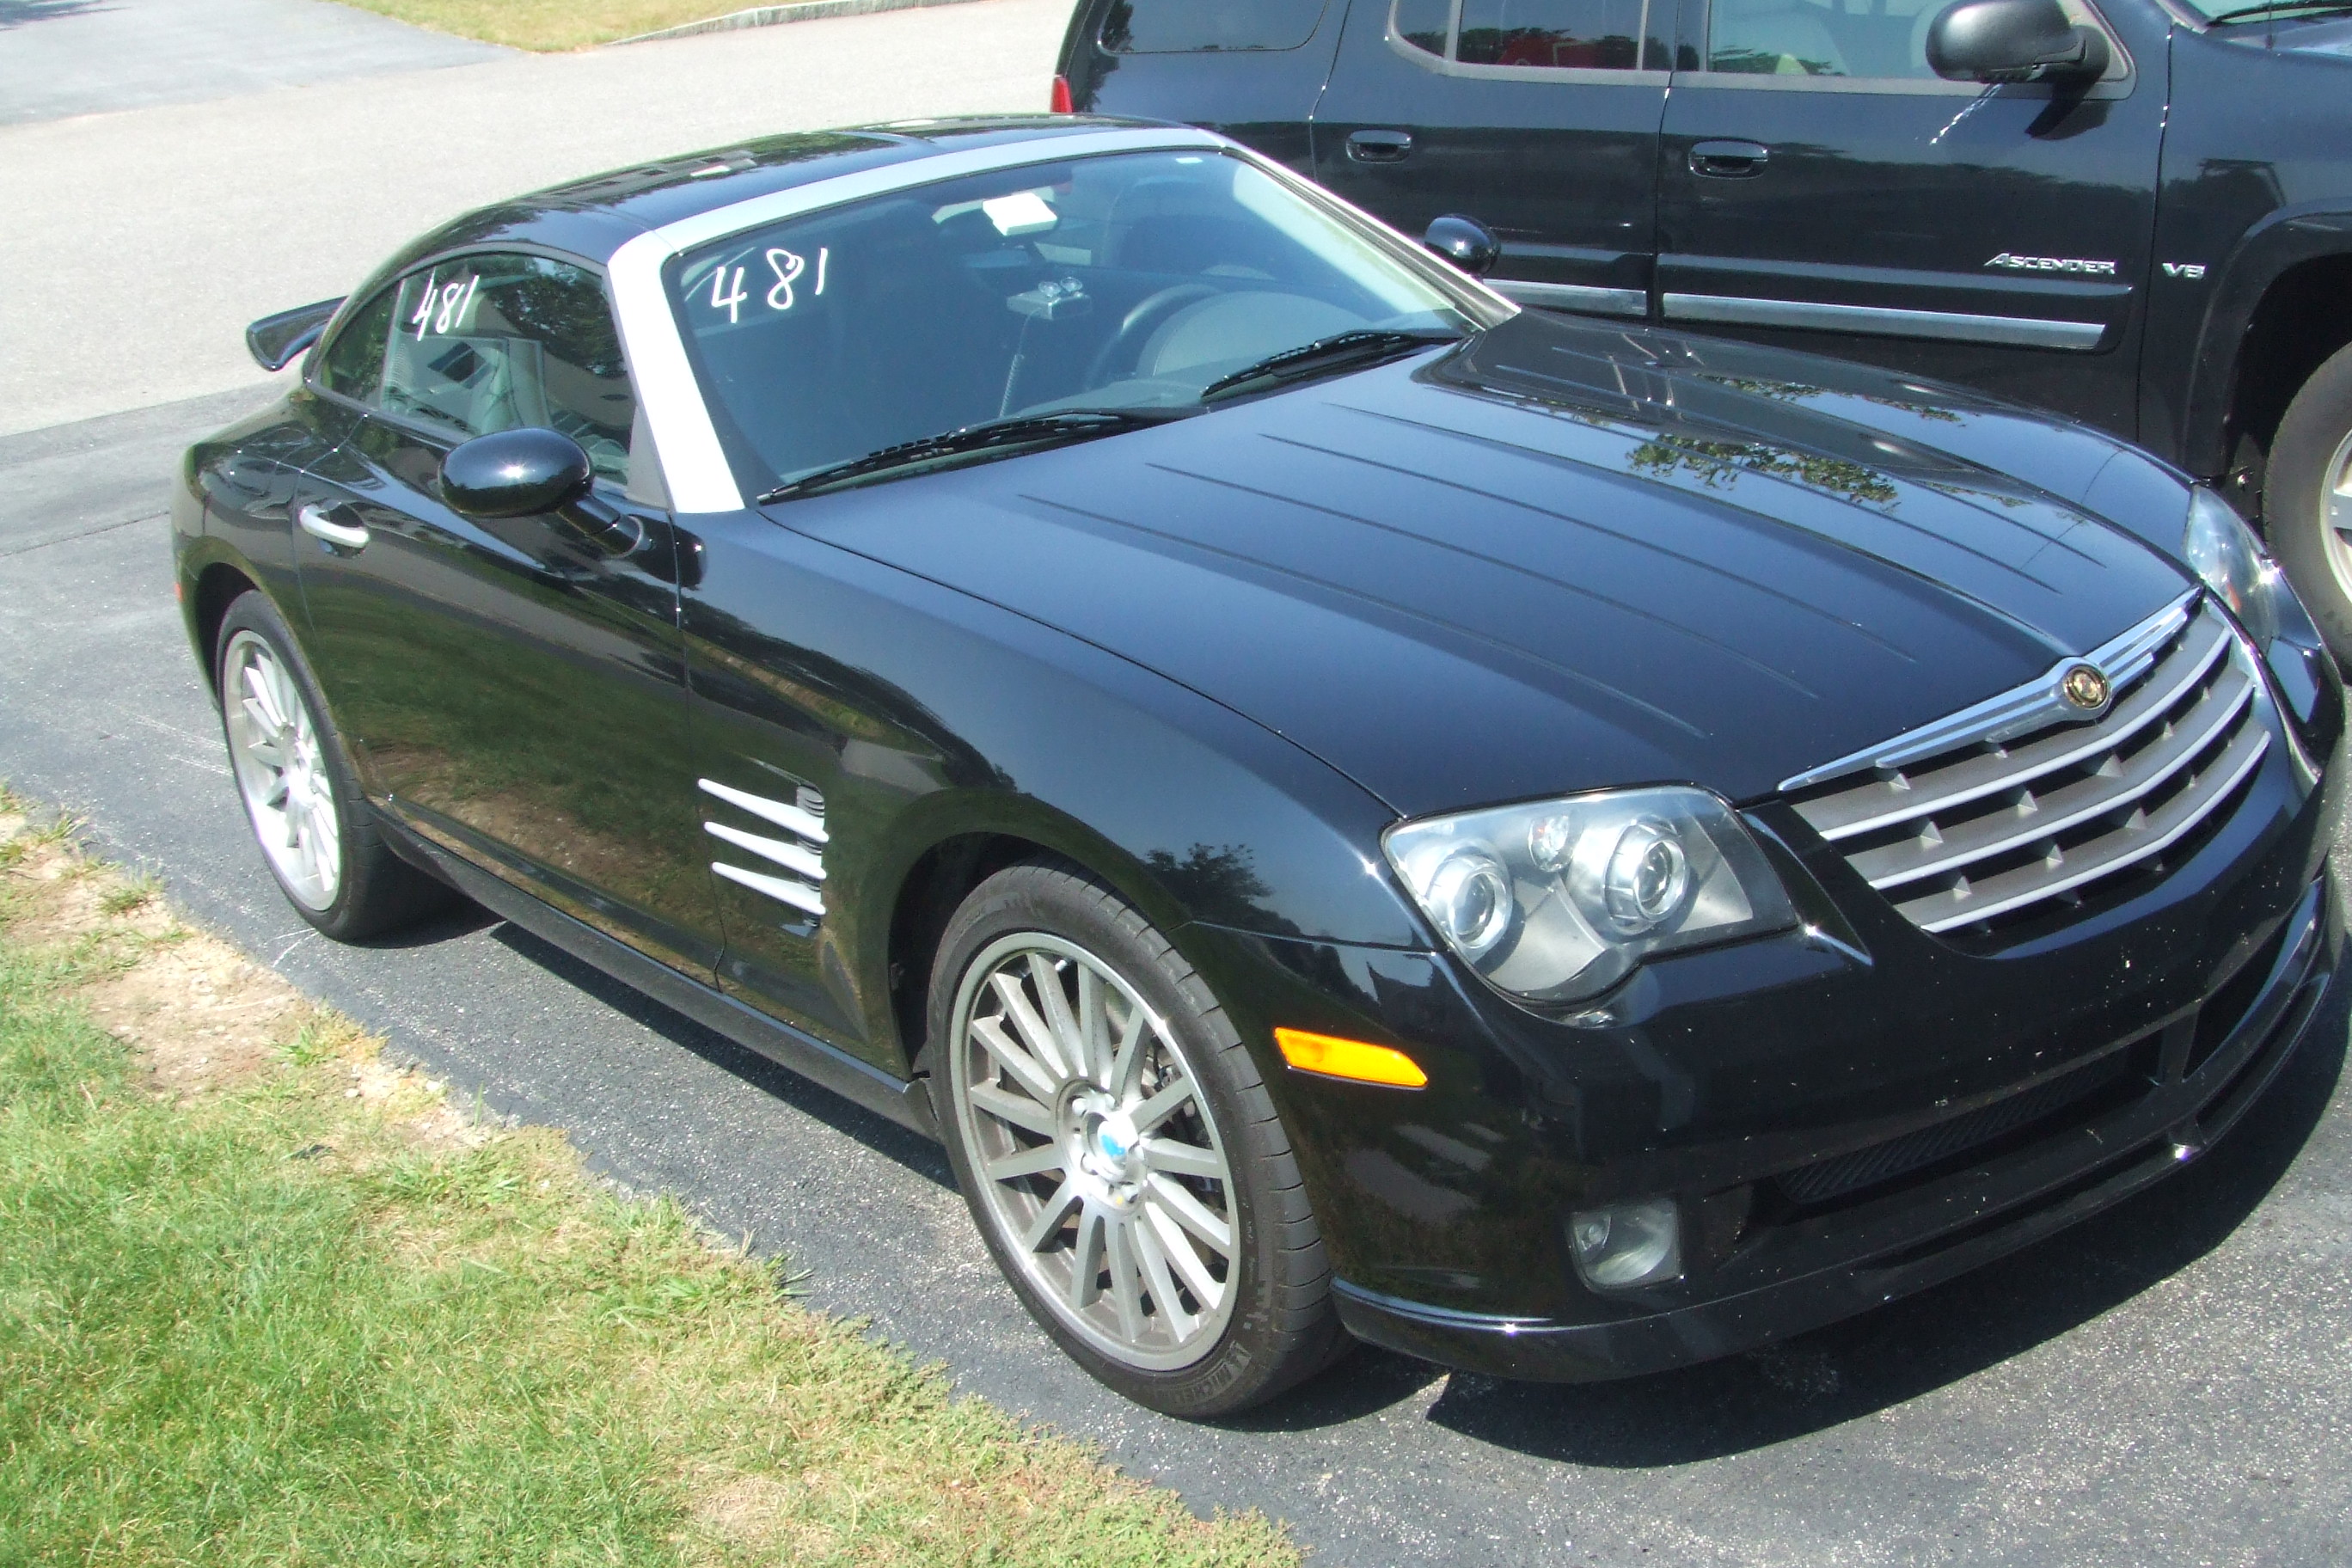  2005 Chrysler Crossfire SRT 6